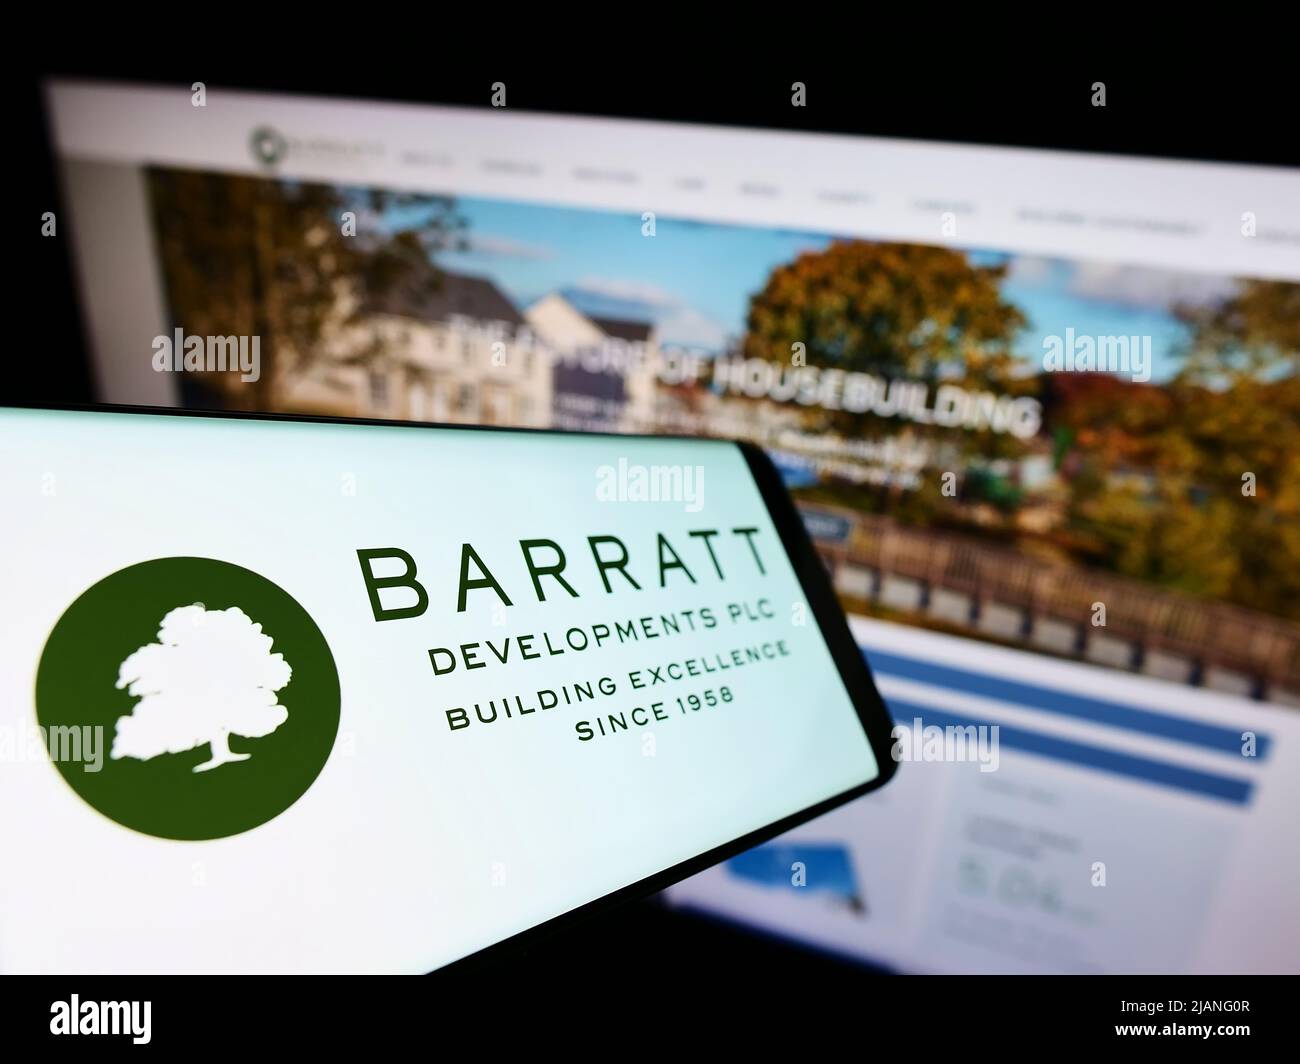 Teléfono móvil con el logotipo de la empresa inmobiliaria Barratt Desarrollos plc en la pantalla frente al sitio web de negocios. Enfoque en la parte central izquierda de la pantalla del teléfono. Foto de stock